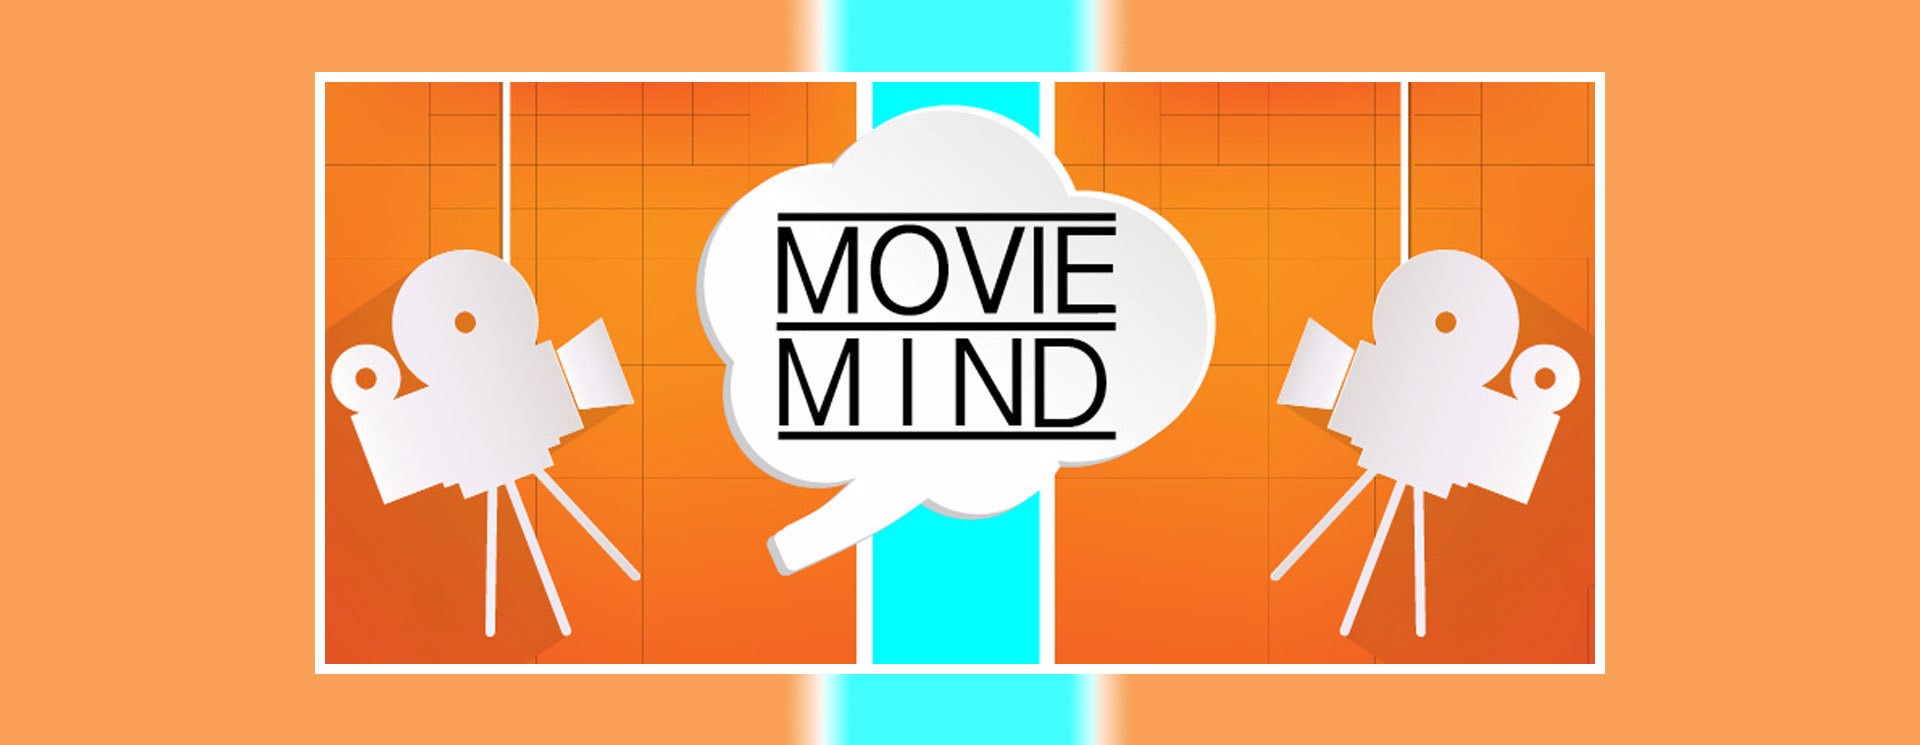 movie mind header